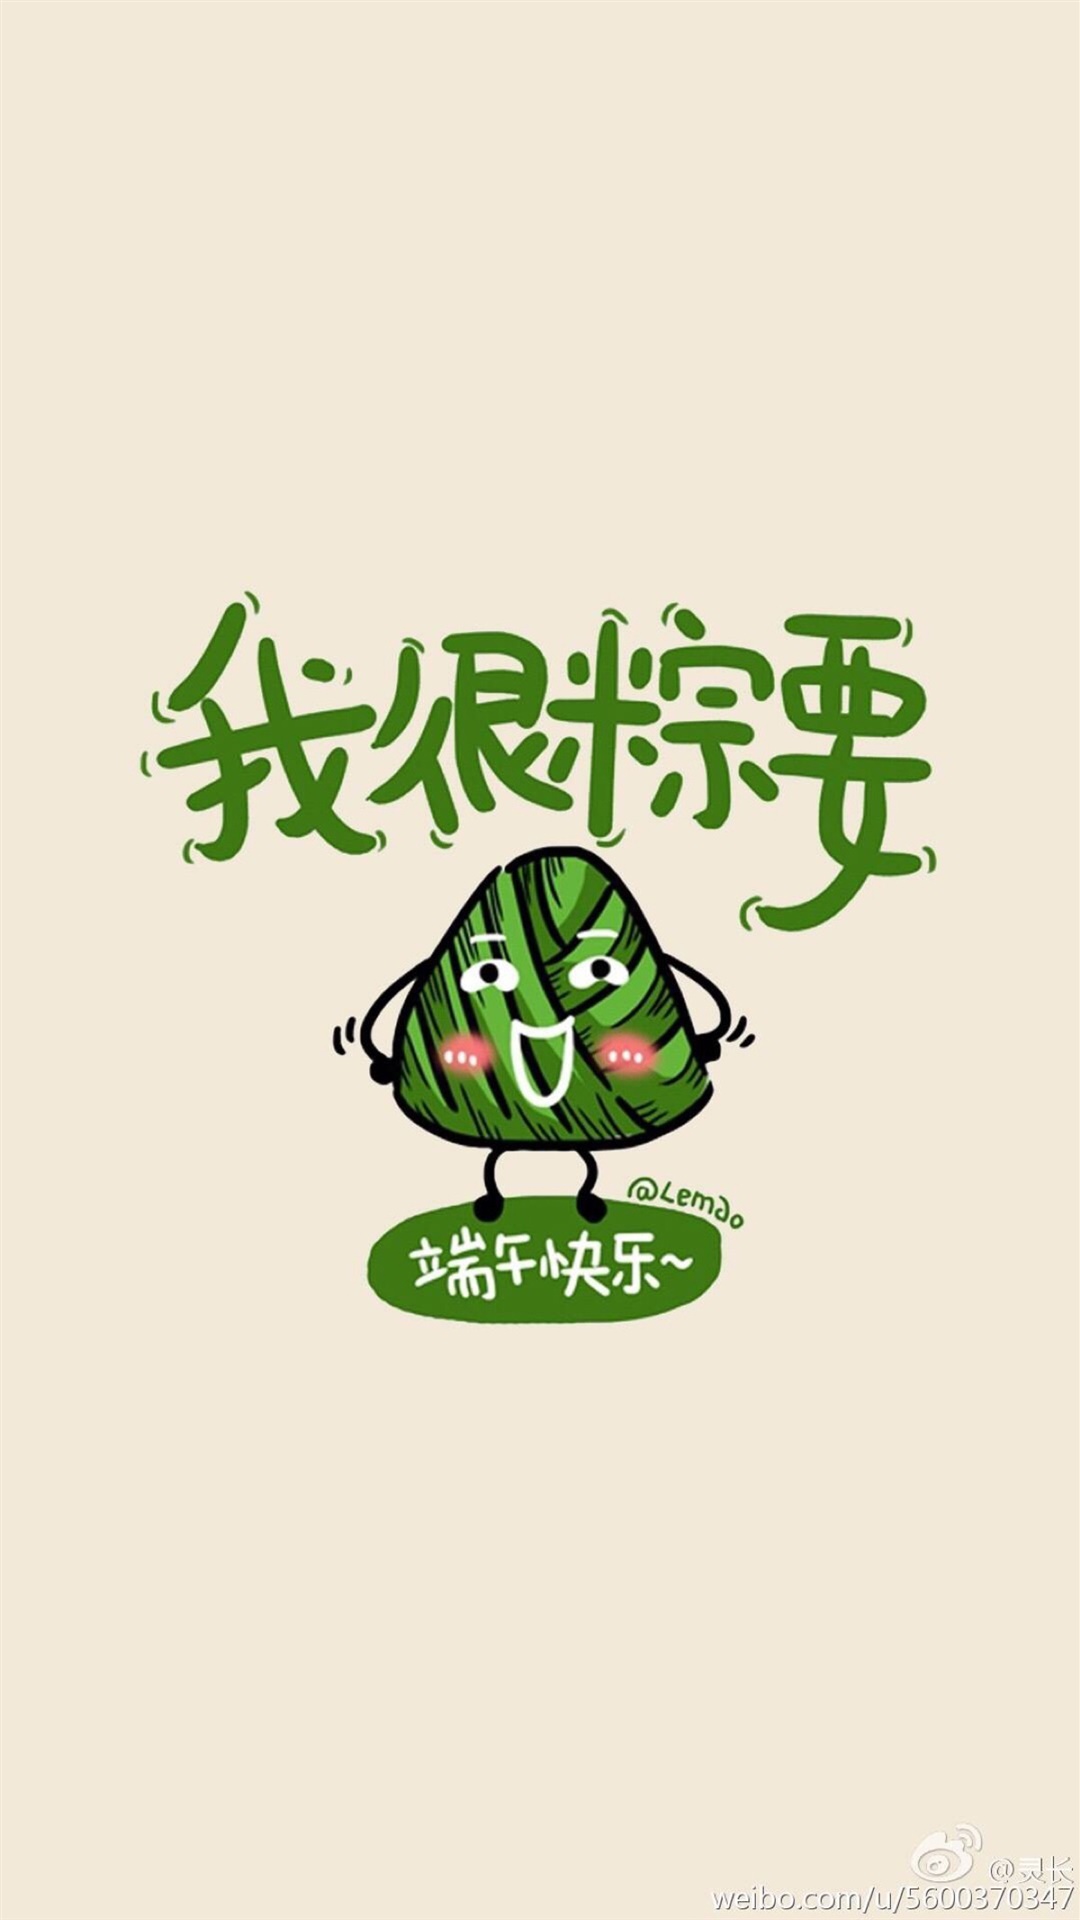 2017端午节粽子搞笑文字手机壁纸下载